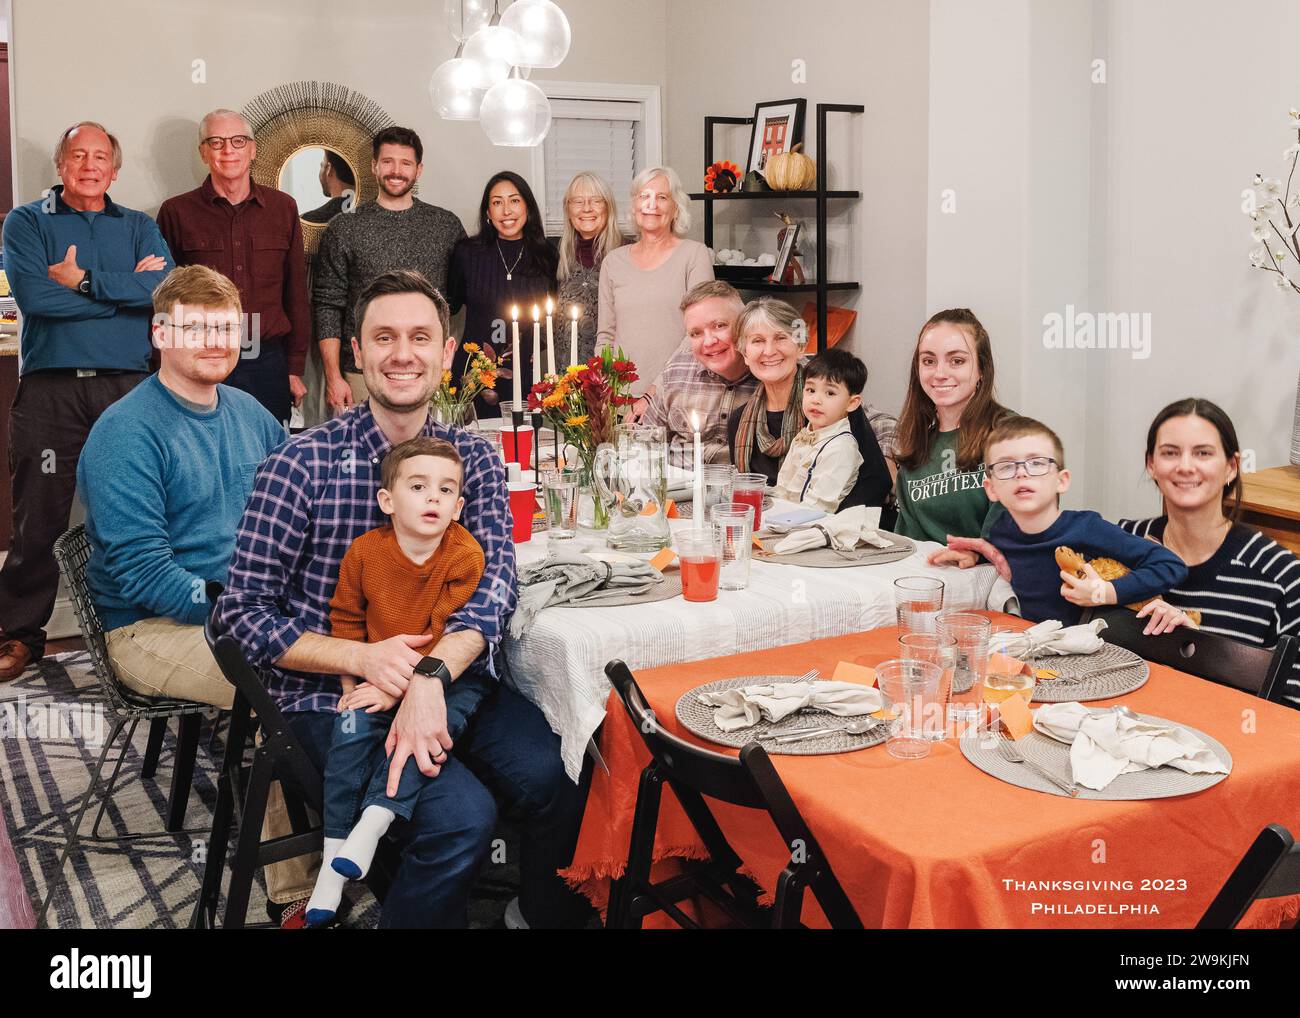 Das Porträt einer großen Familie, die sich zum Thanksgiving Day Mahl versammelt hat Stockfoto